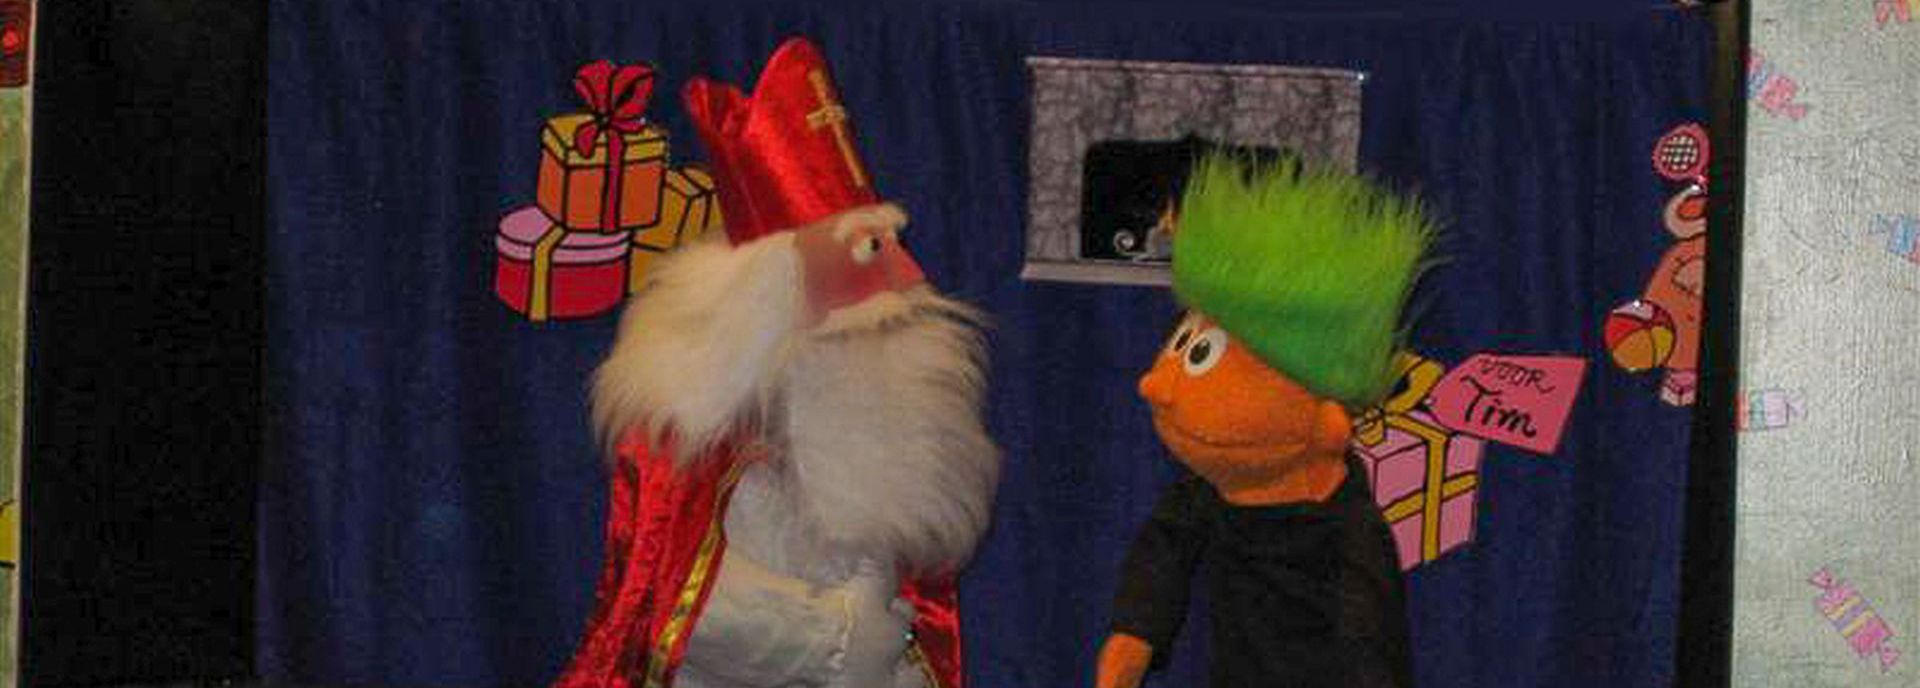 Theater Fantast komt naar De Tamboer met de voorstelling Een cadeau voor Sinterklaas